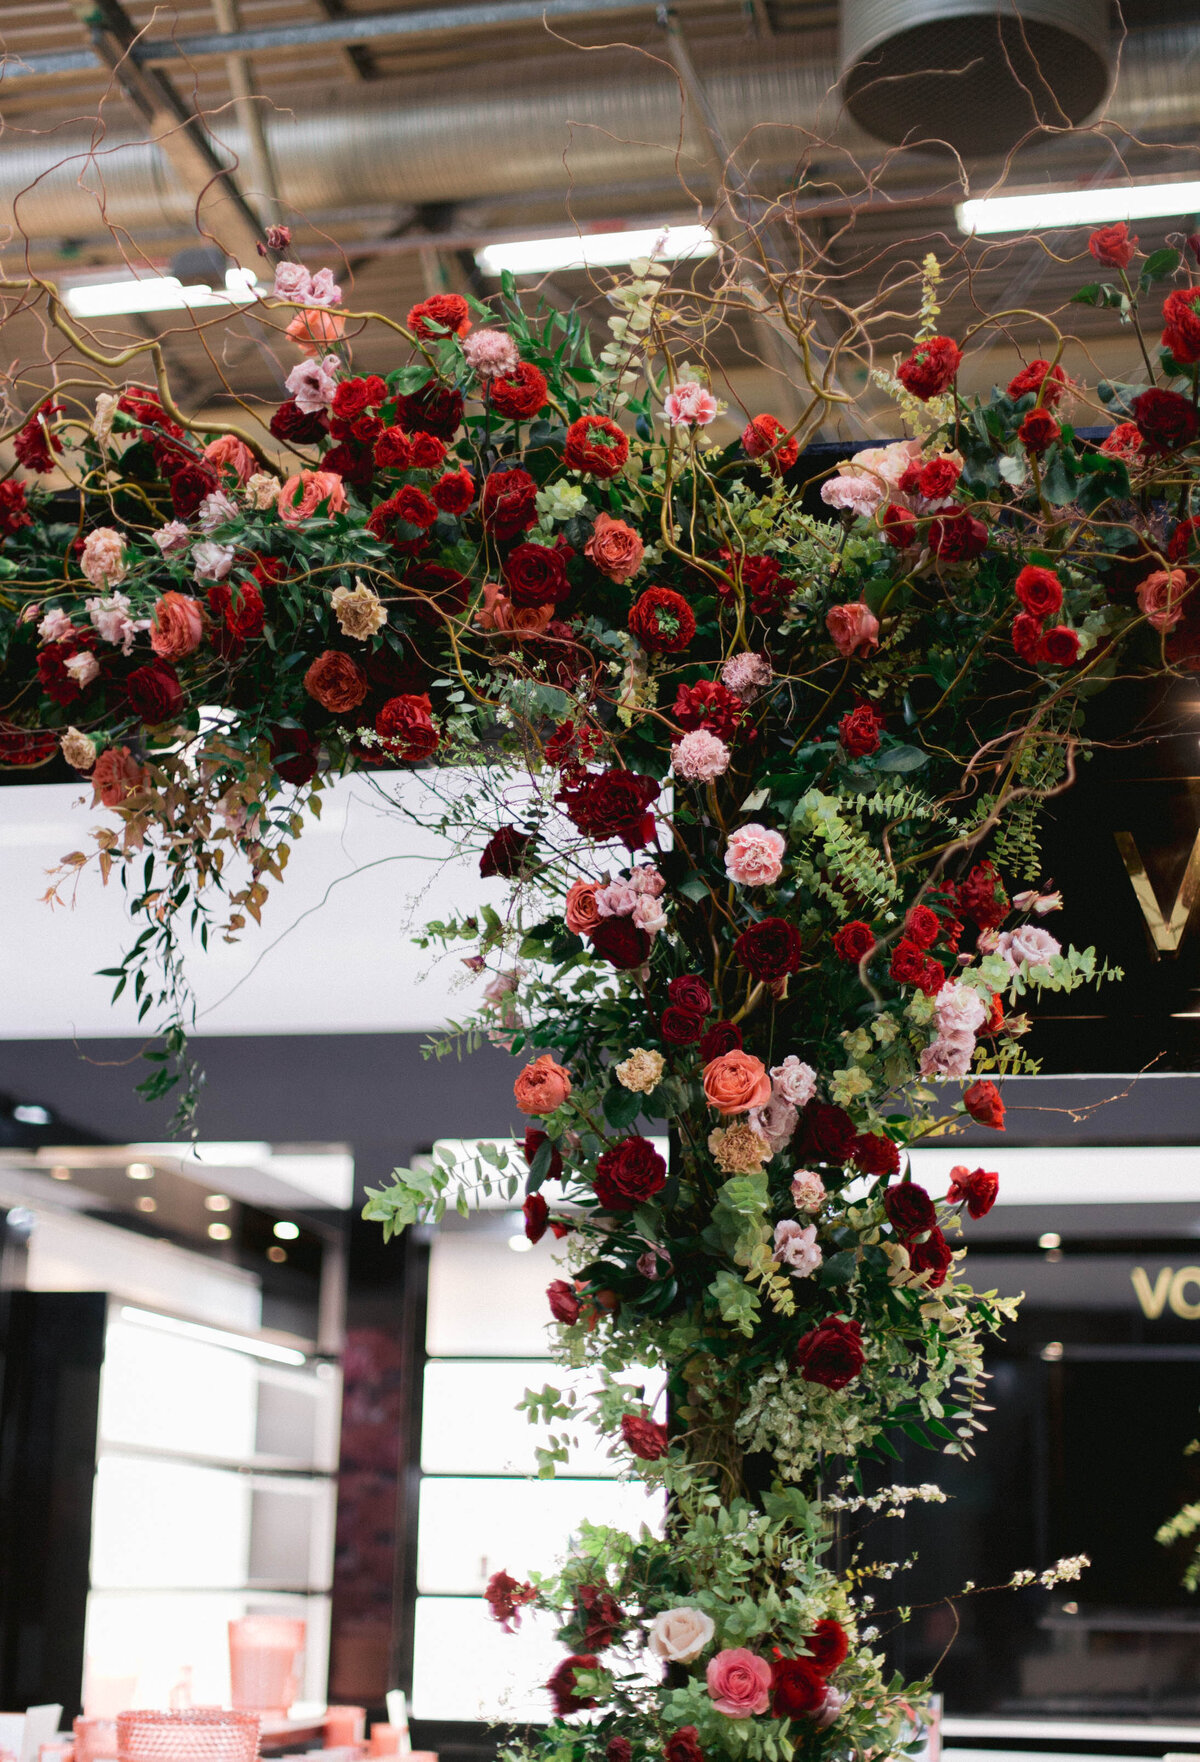 Maison_Objet_flower_decoration_florist-1-17